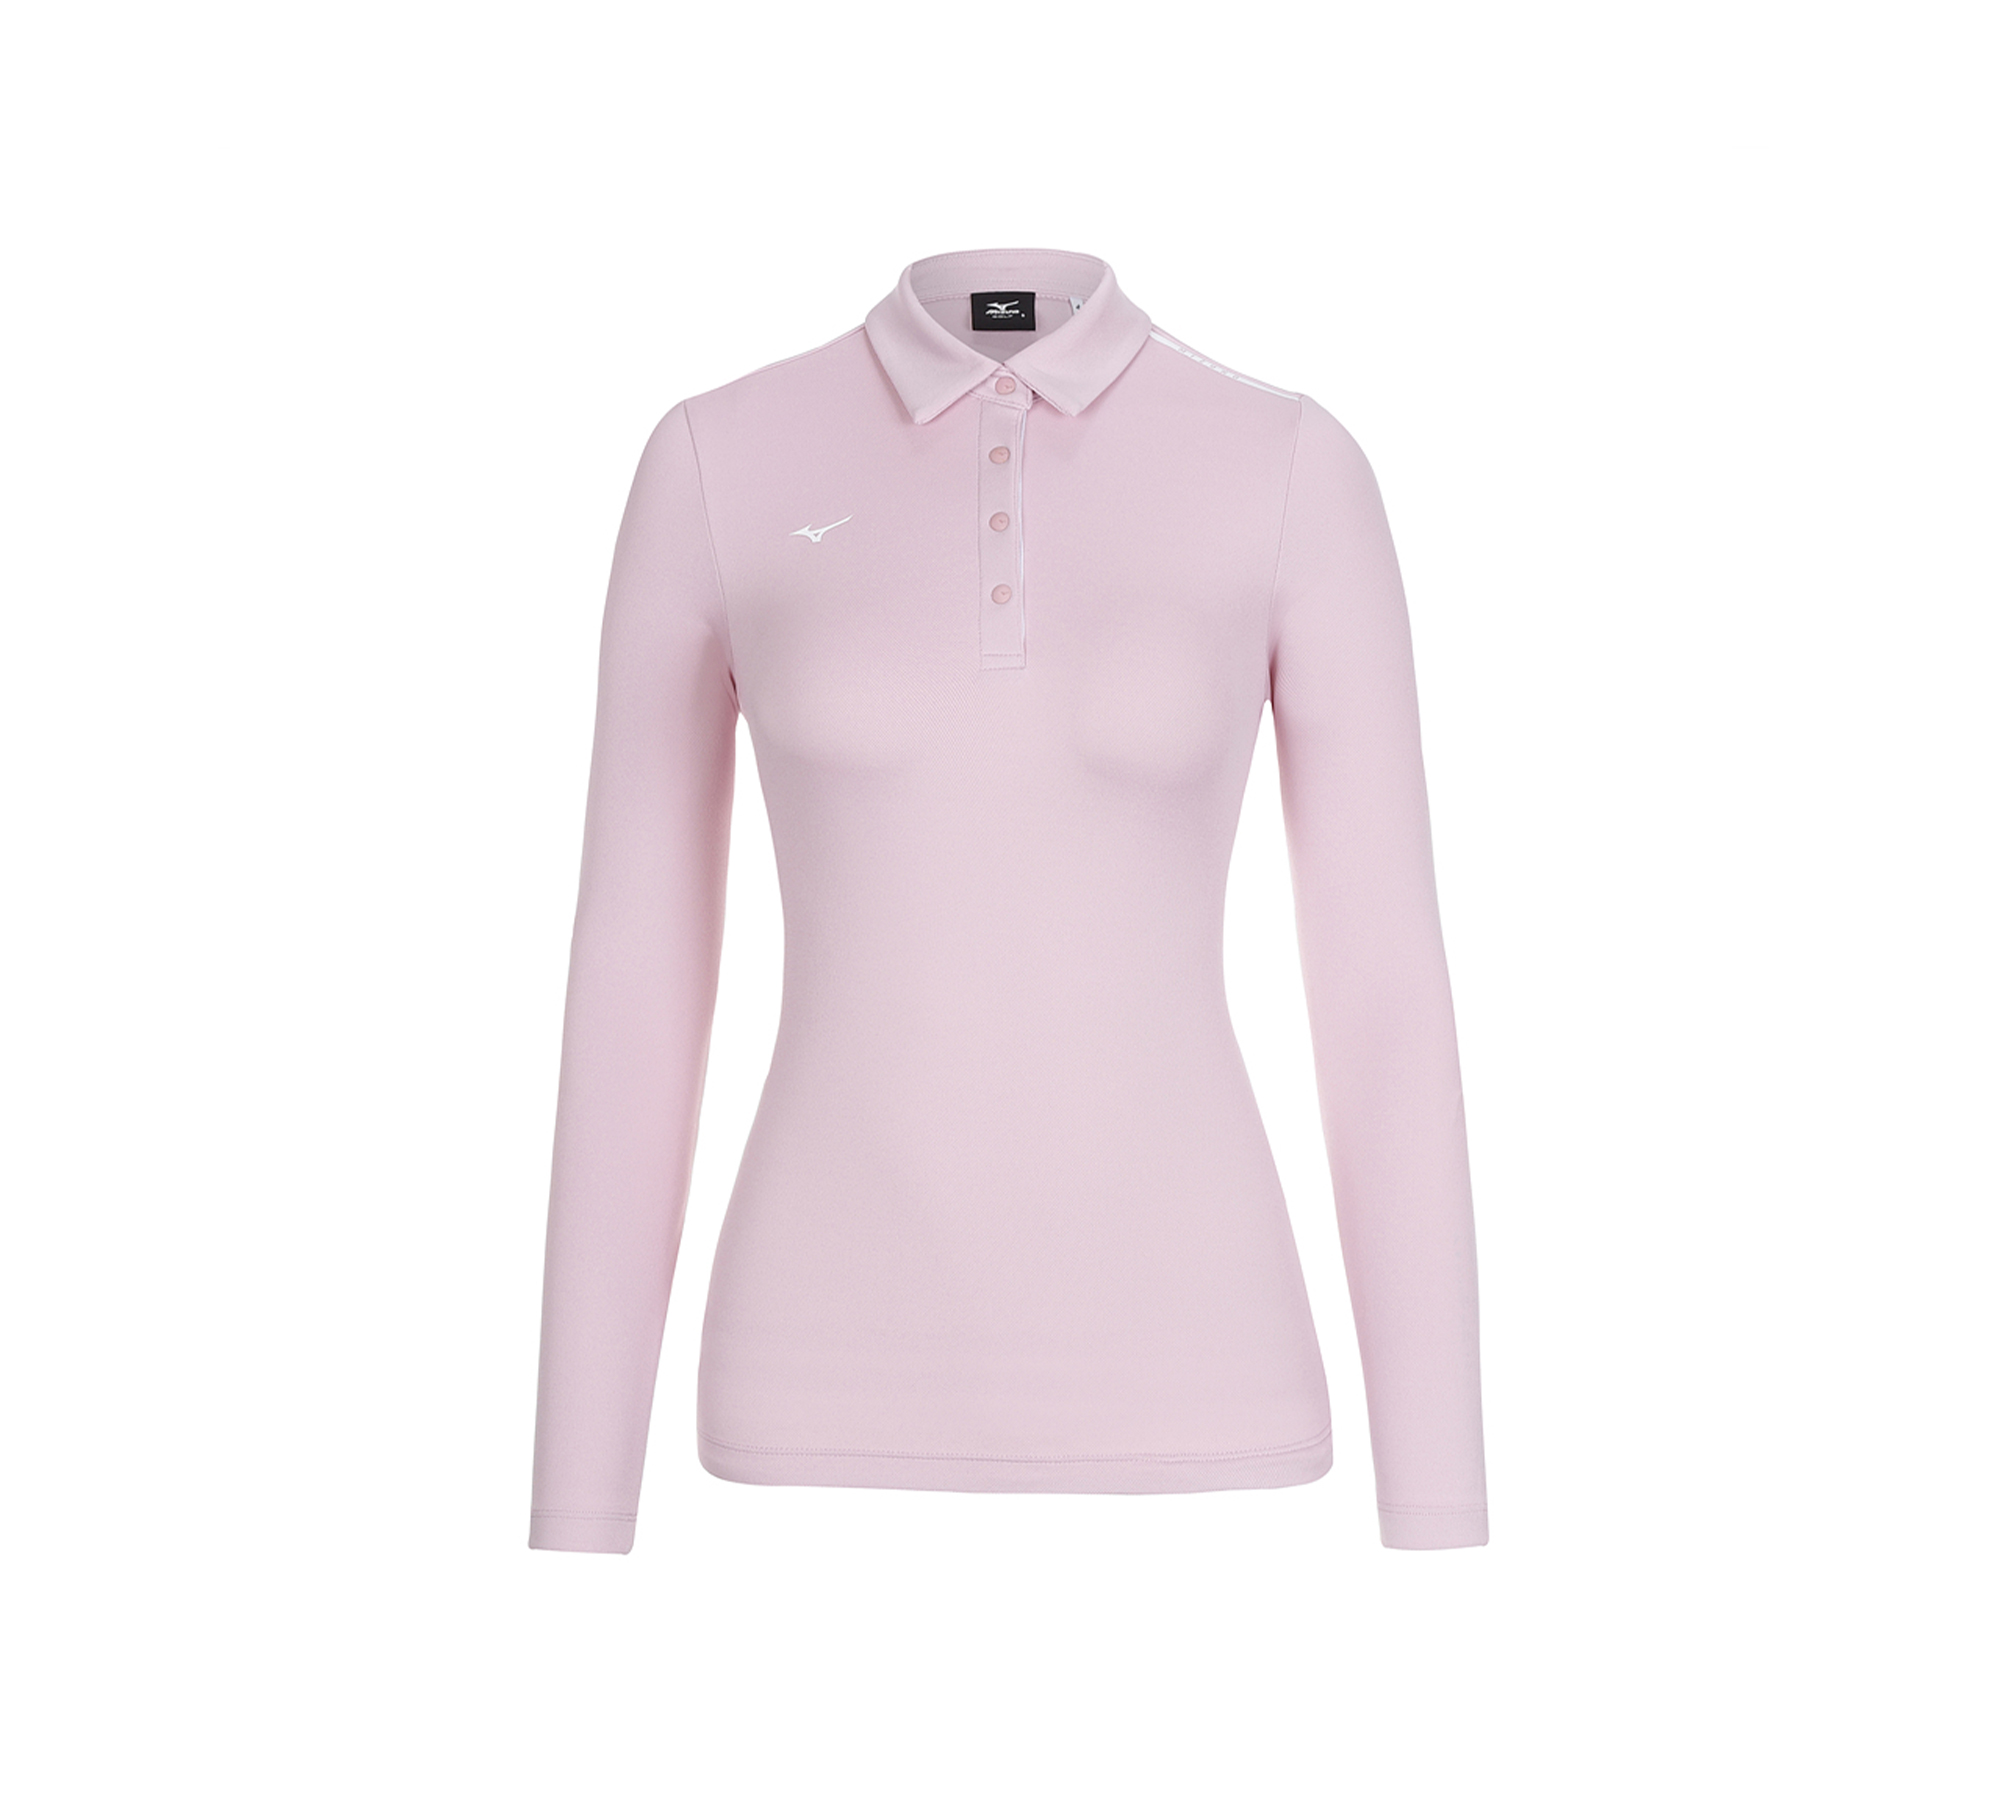 FX 여성 베이직 티셔츠_52KA1761, 핑크